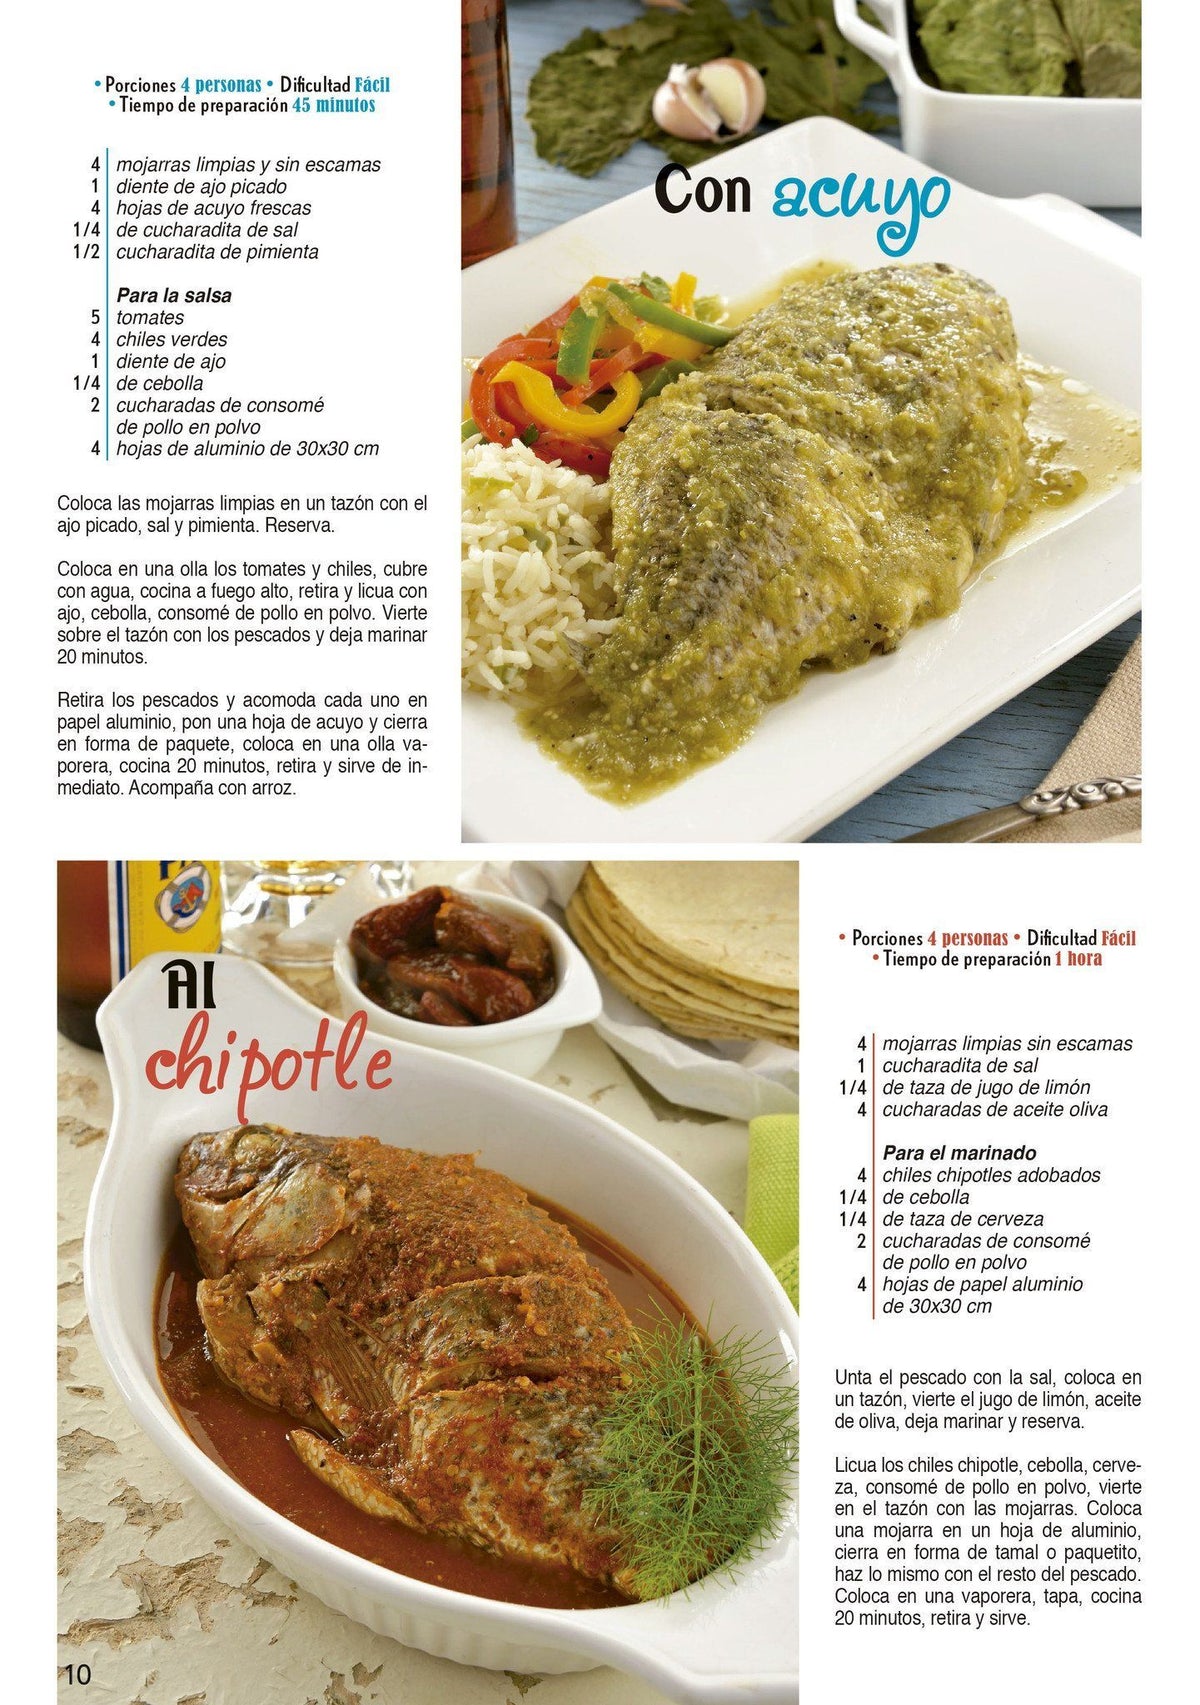 Caprichos y Antojos Especial 61 - Nuevas recetas de mojarras y filetes - Formato Digital - ToukanMango